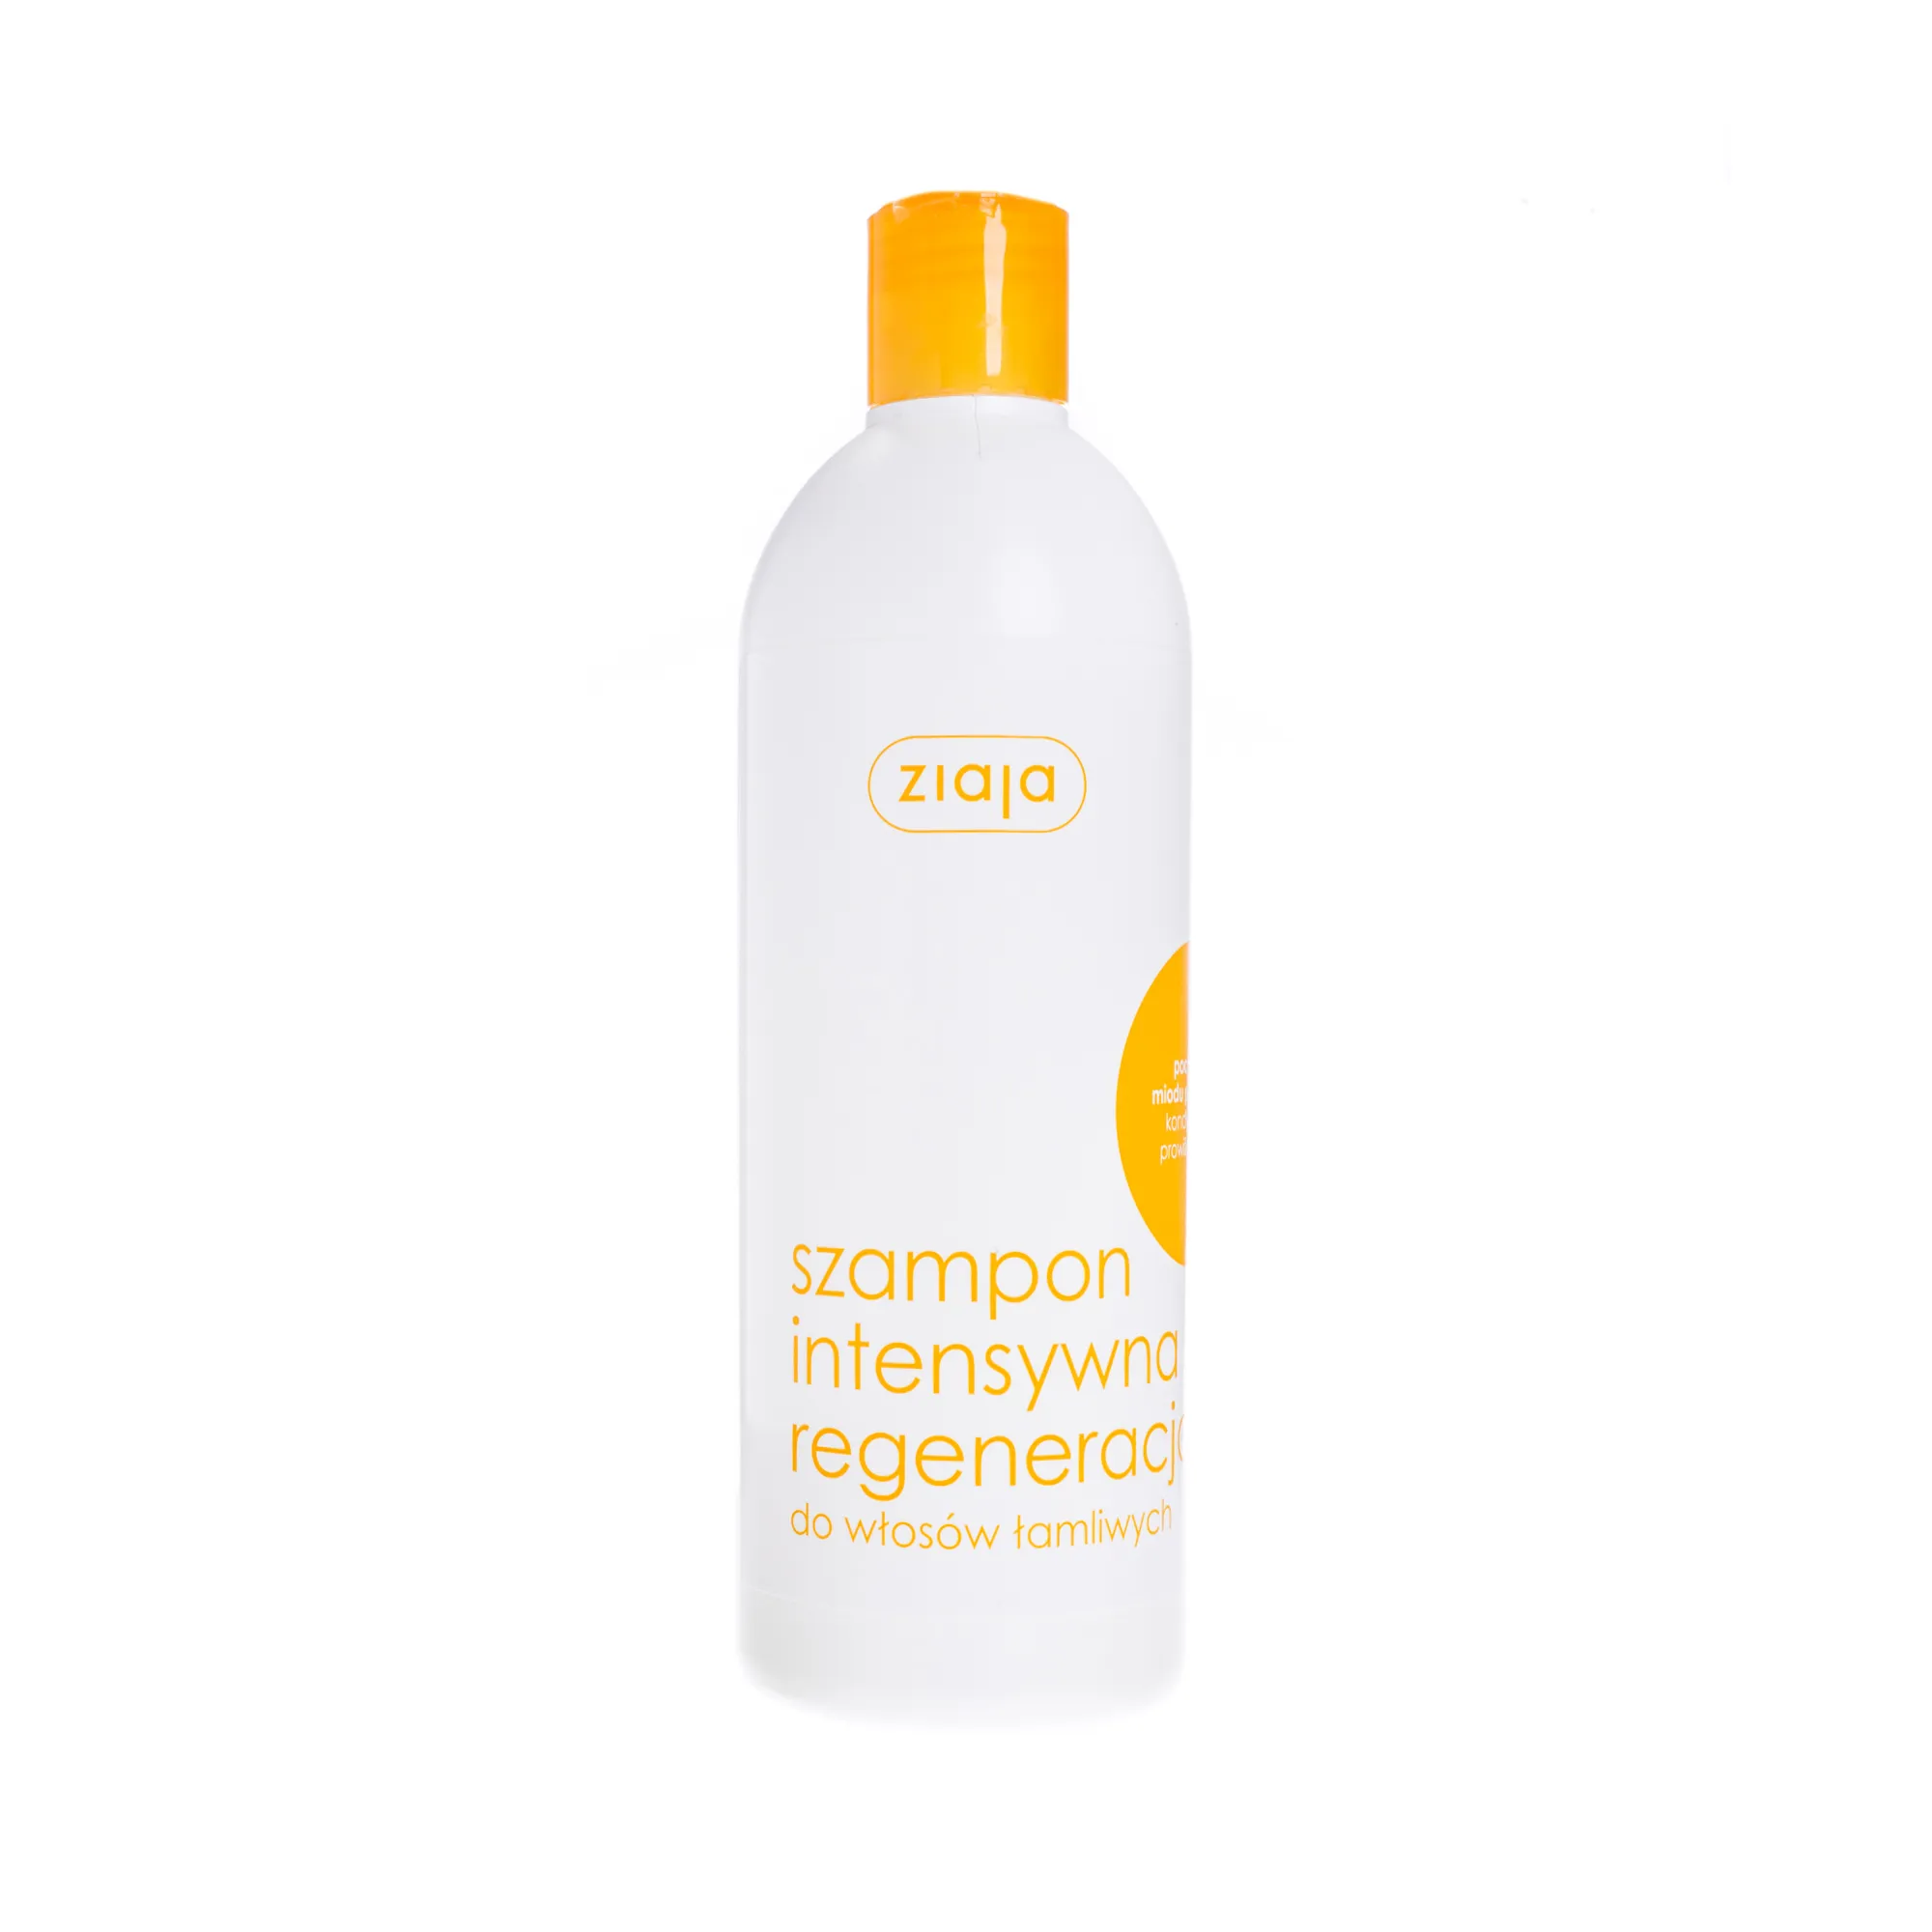 Ziaja Intensywna Regeneracja, szampon do włosów łamliwych, 400 ml 